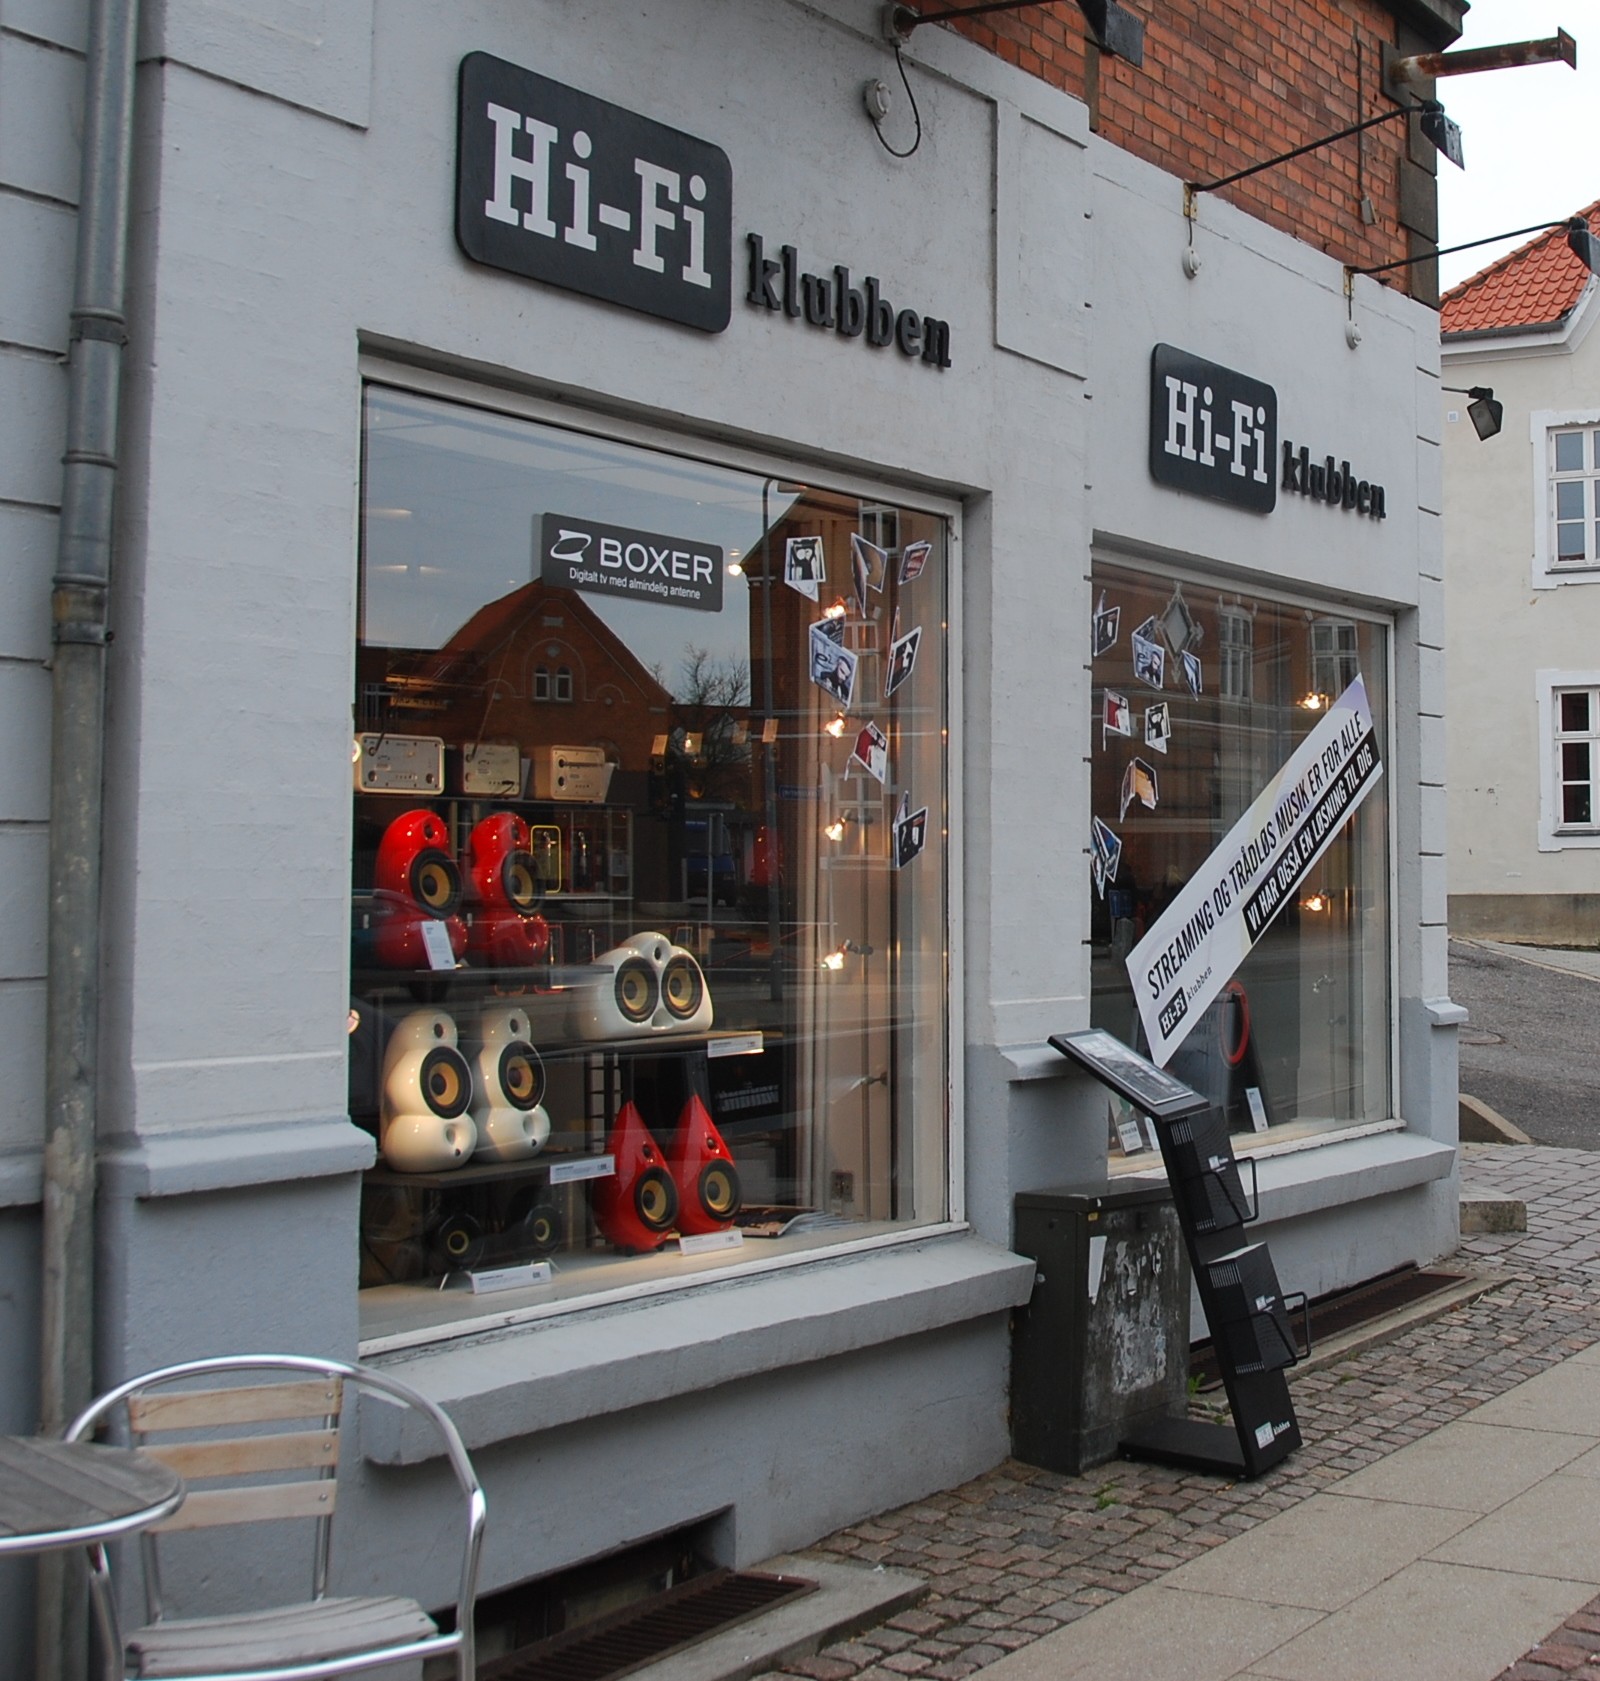 Hi-Fi_klubben_(Viborg).jpg